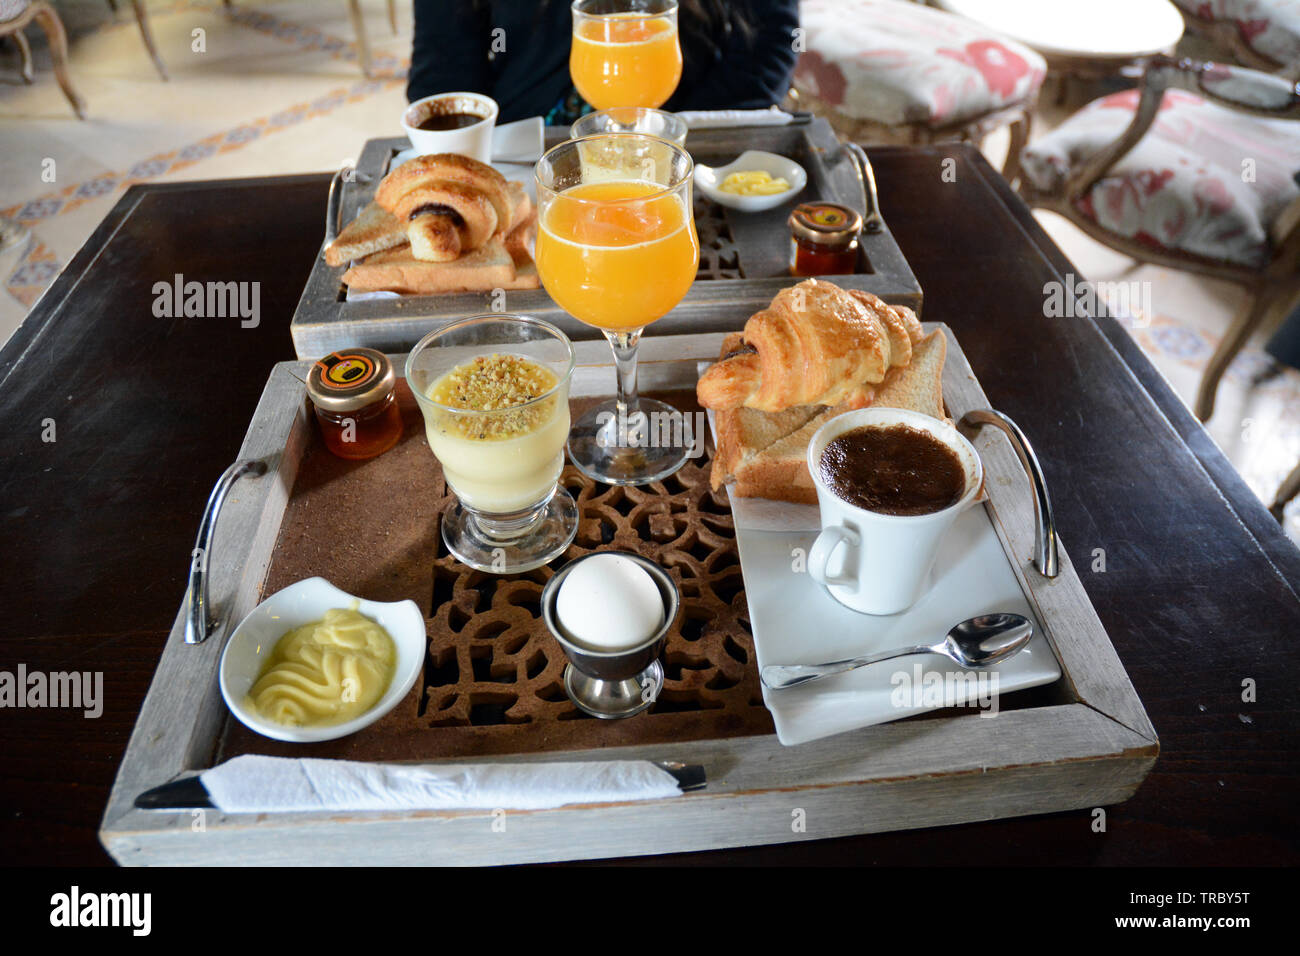 Continentale colazione tunisino di caffè, succo d'arancia, croissant, crema pasticcera, un uovo, toast, marmellata e burro a cafe nella medina di Tunisi, Tunisia. Foto Stock